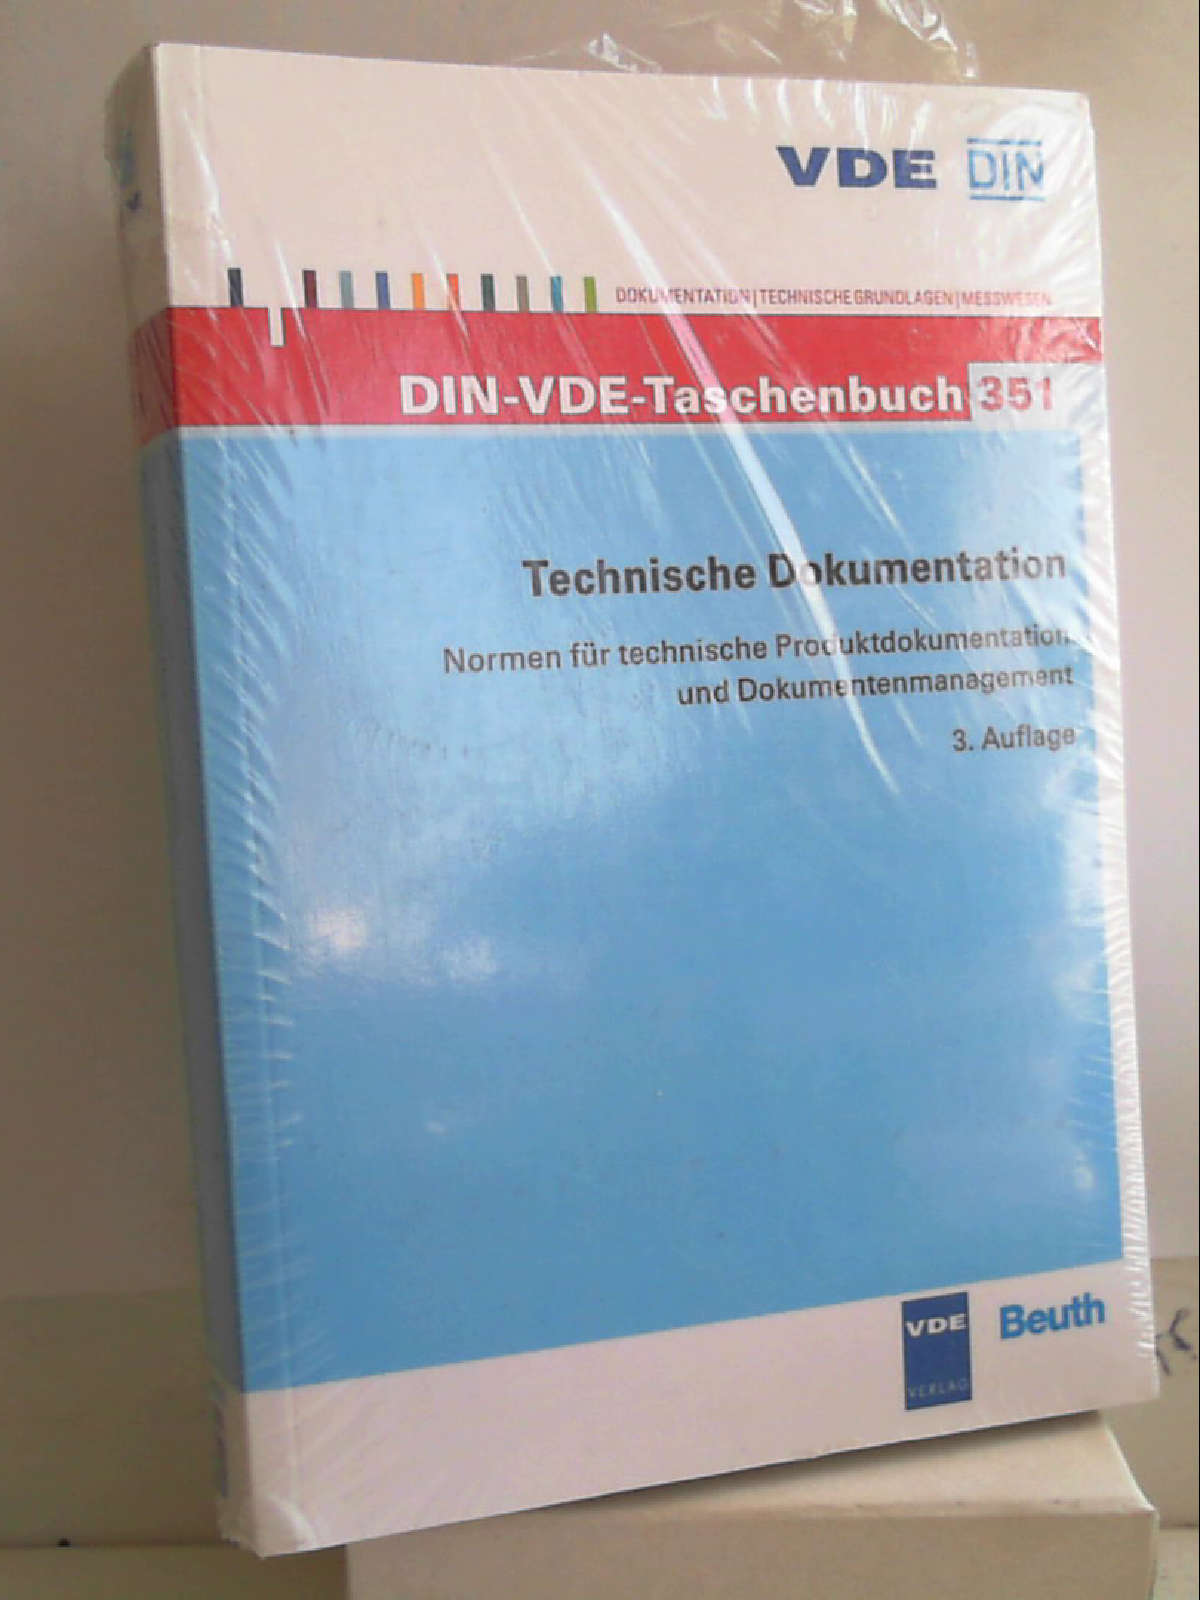 Technische Dokumentation: Normen für technische Produktdokumentation und Dokumentenmanagement (DIN-VDE-Taschenbuch) [Nov 21, 2011] DIN e.V.